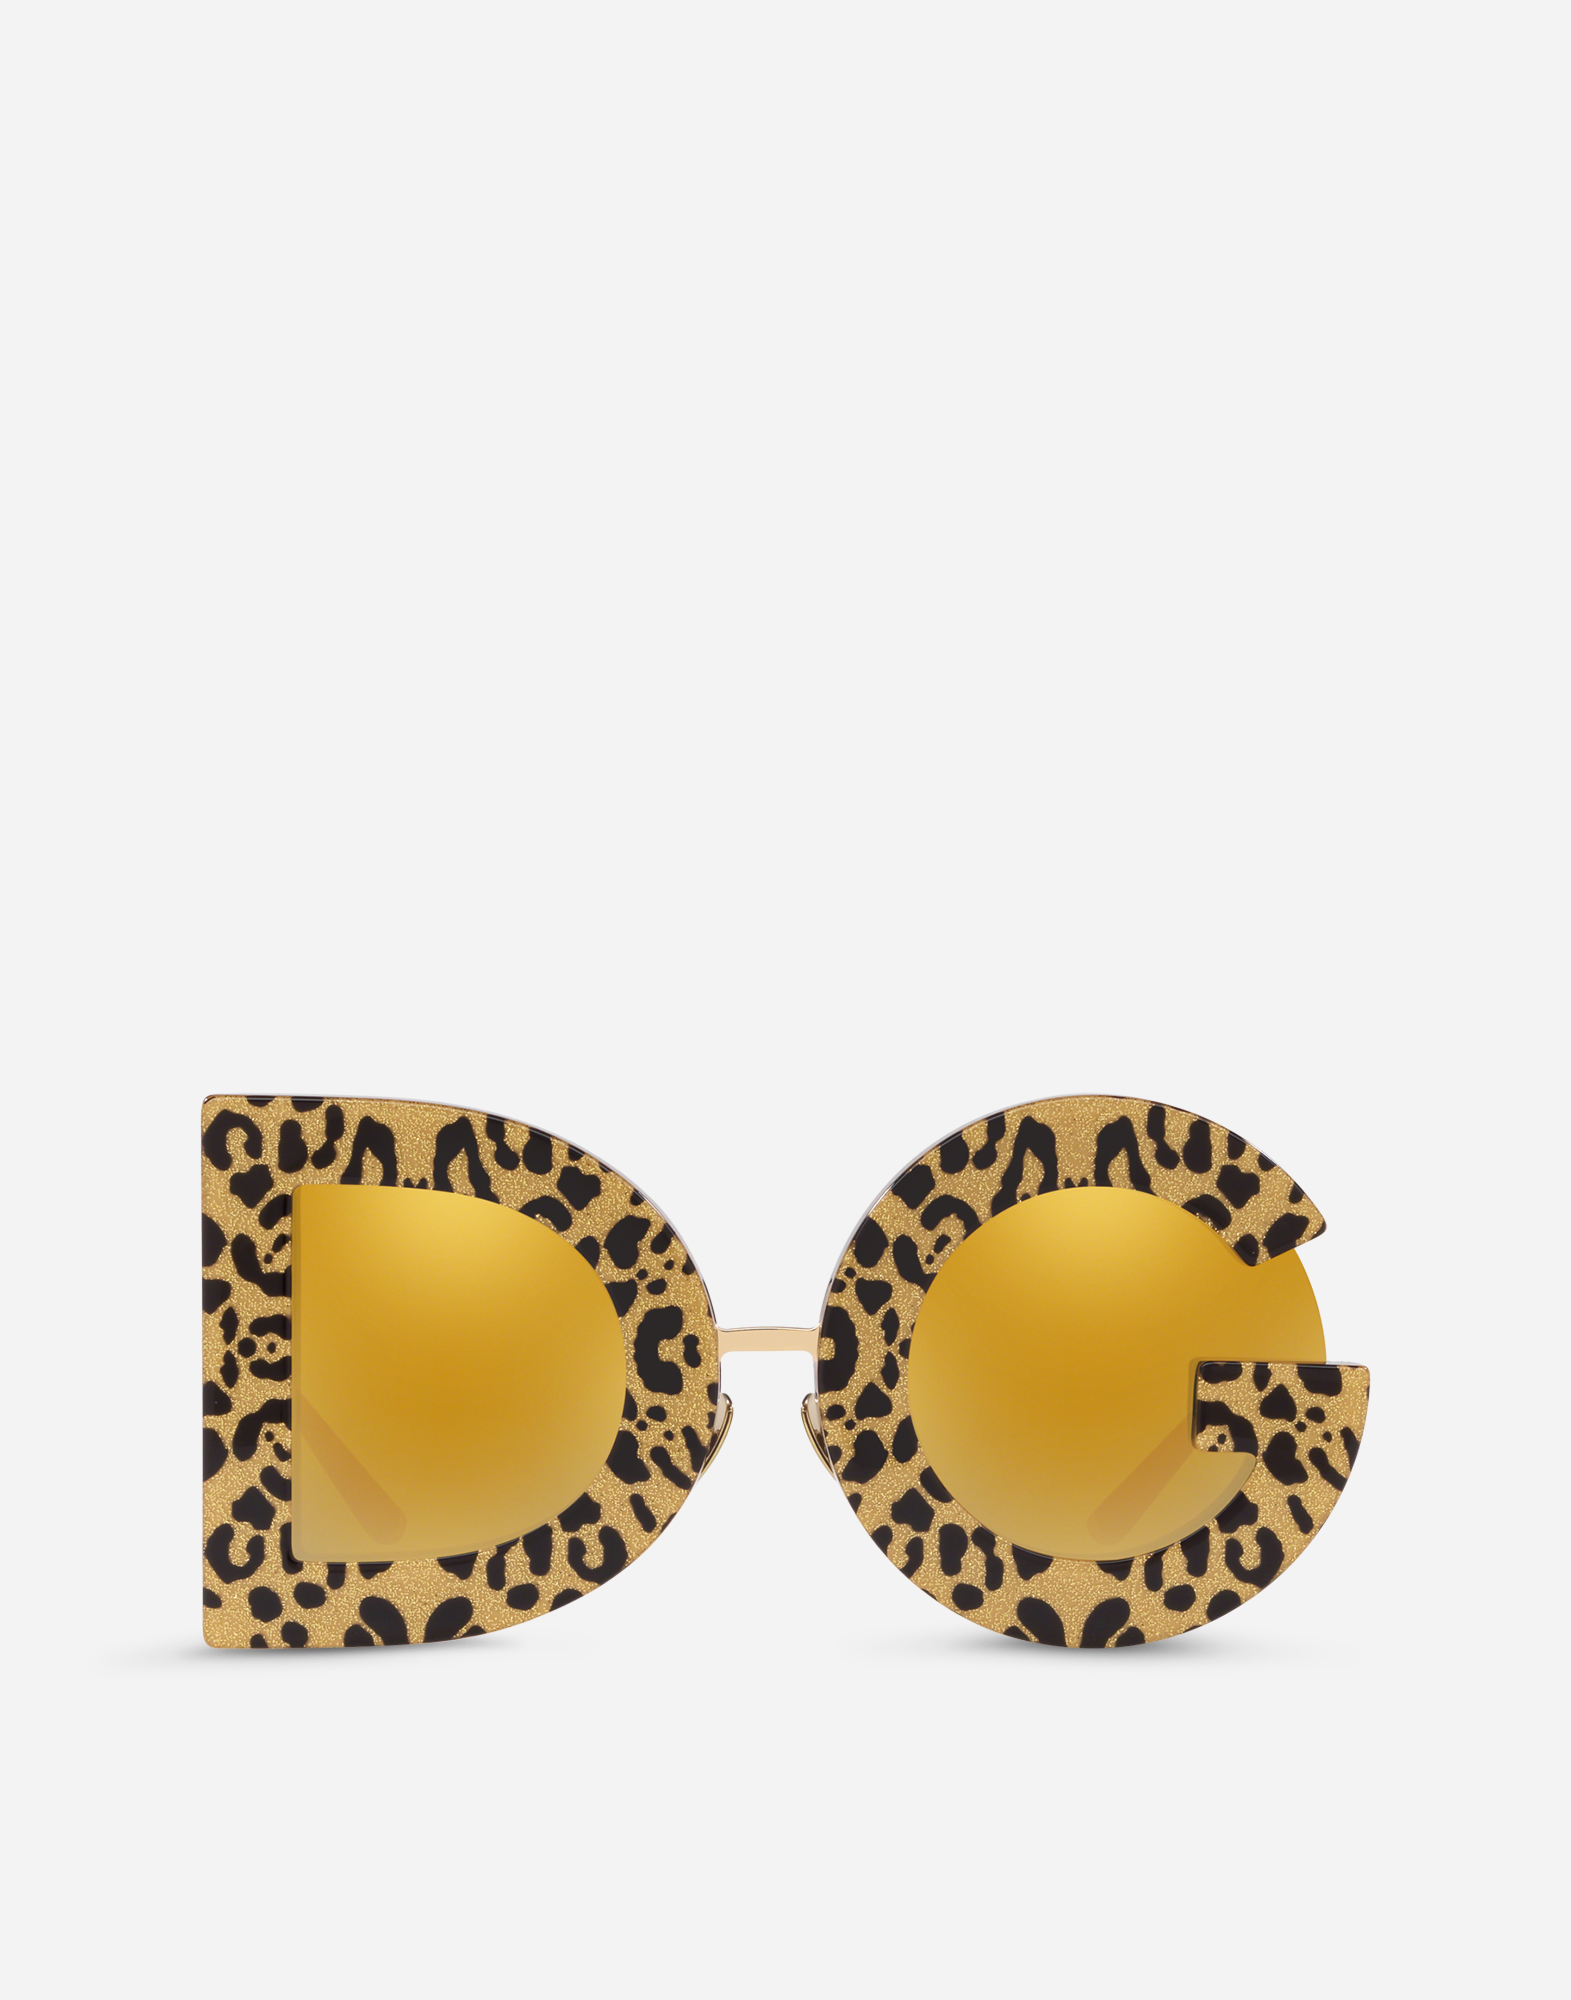 DG Leo sunglasses in Shiny Gold and Leo Gold Glitter Print